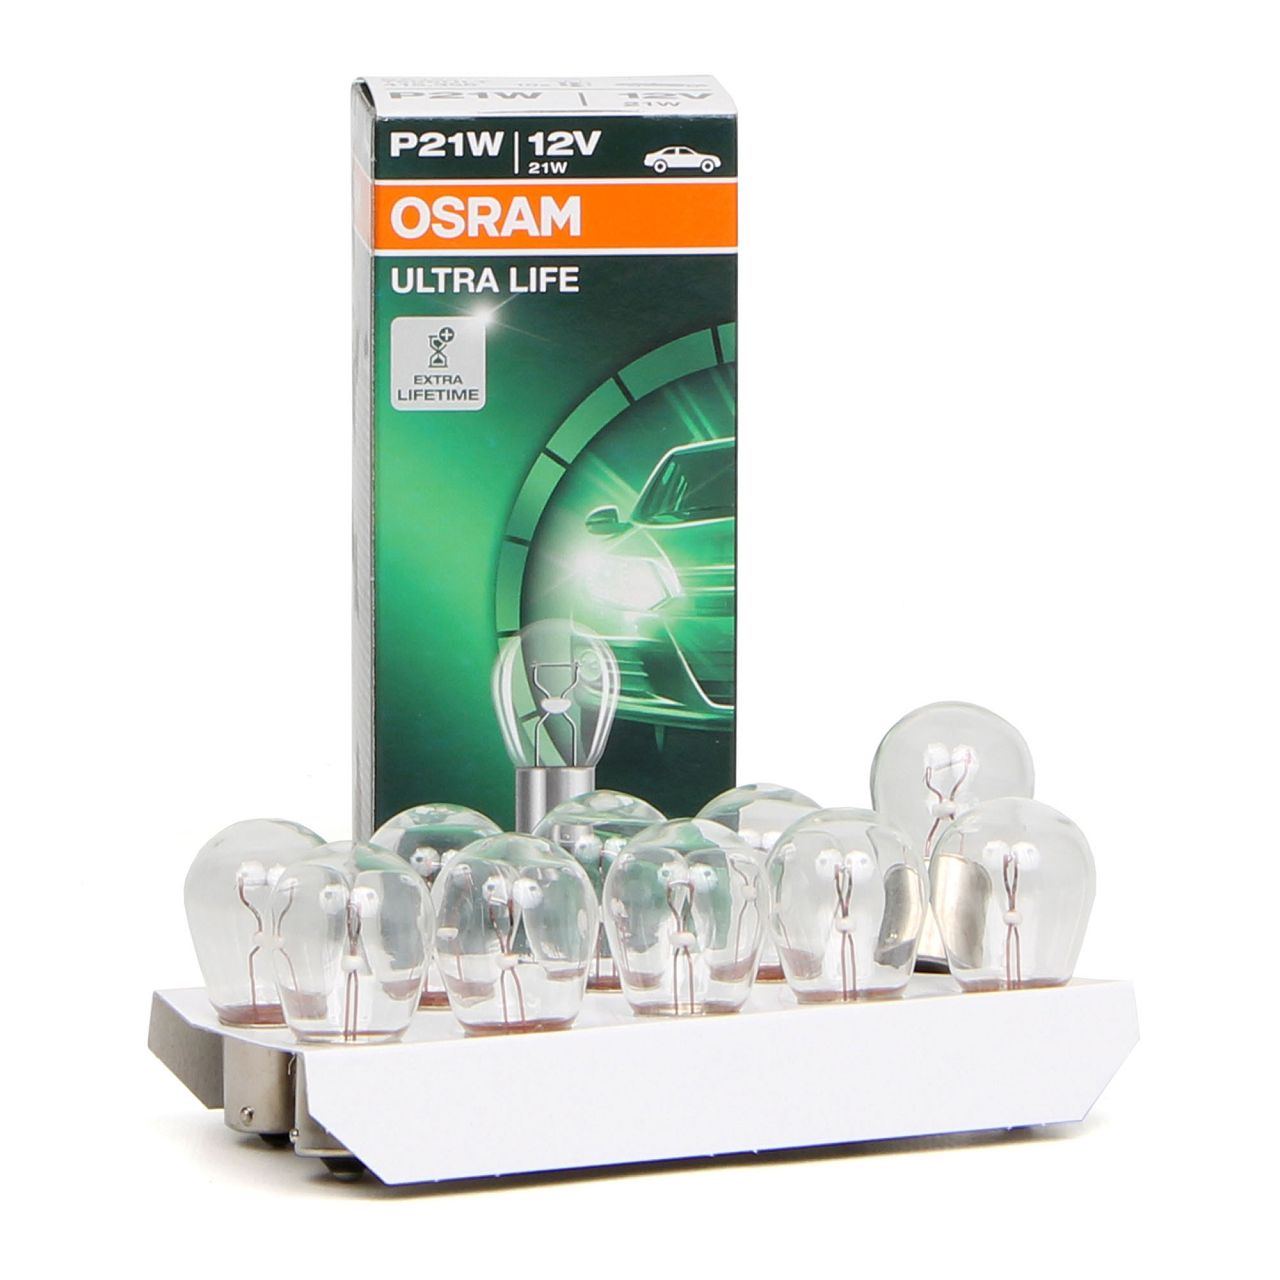 OSRAM Halogenlampen / Glühlampen / LEDs - 7506ULT 